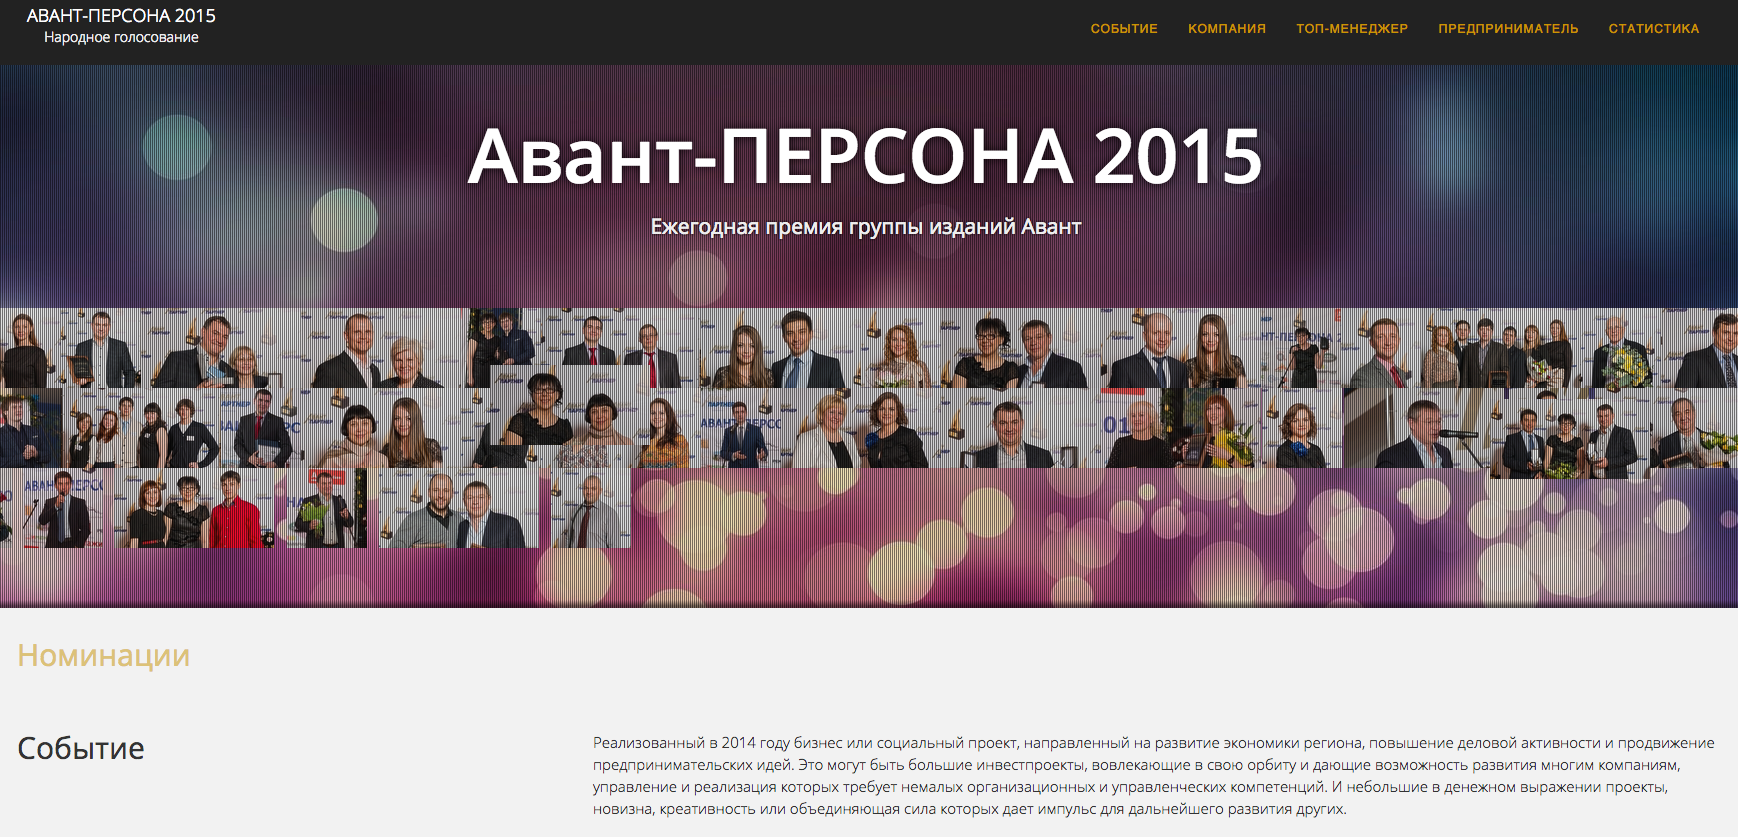 Началось голосование за «Авант-ПЕРСОНУ 2015»